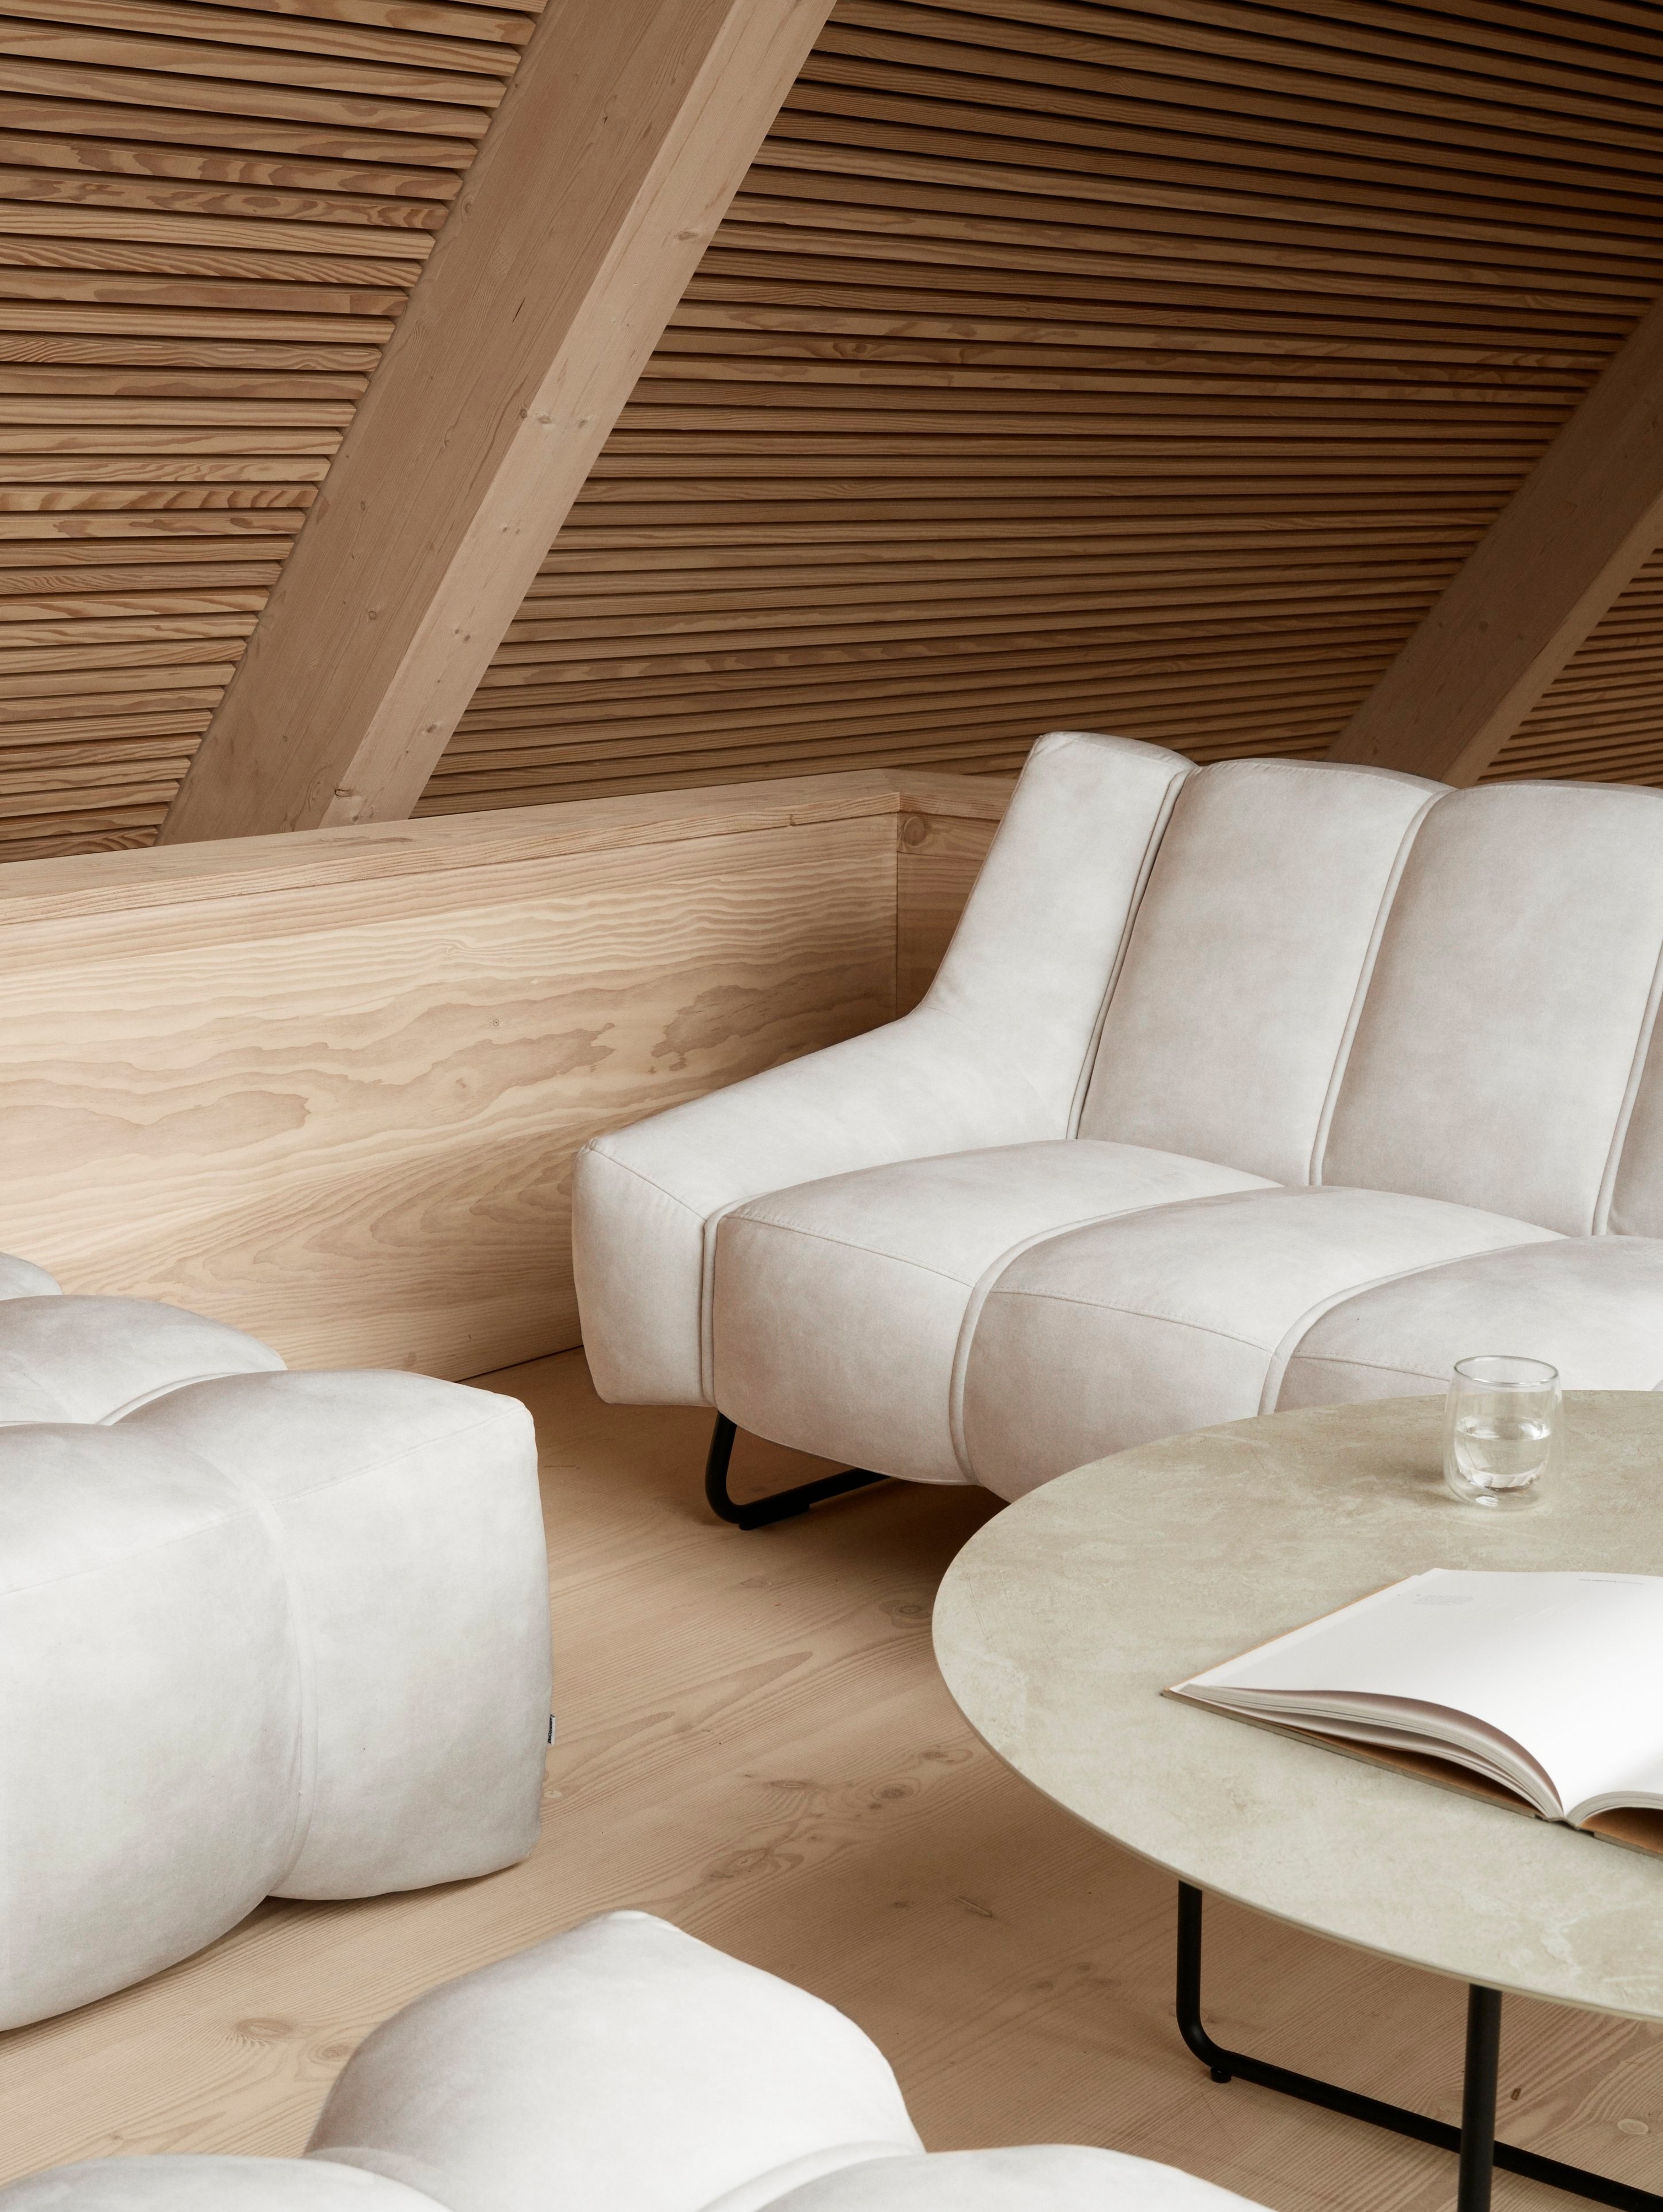 Salon de style scandinave avec le canapé Nawabari et les poufs assortis.